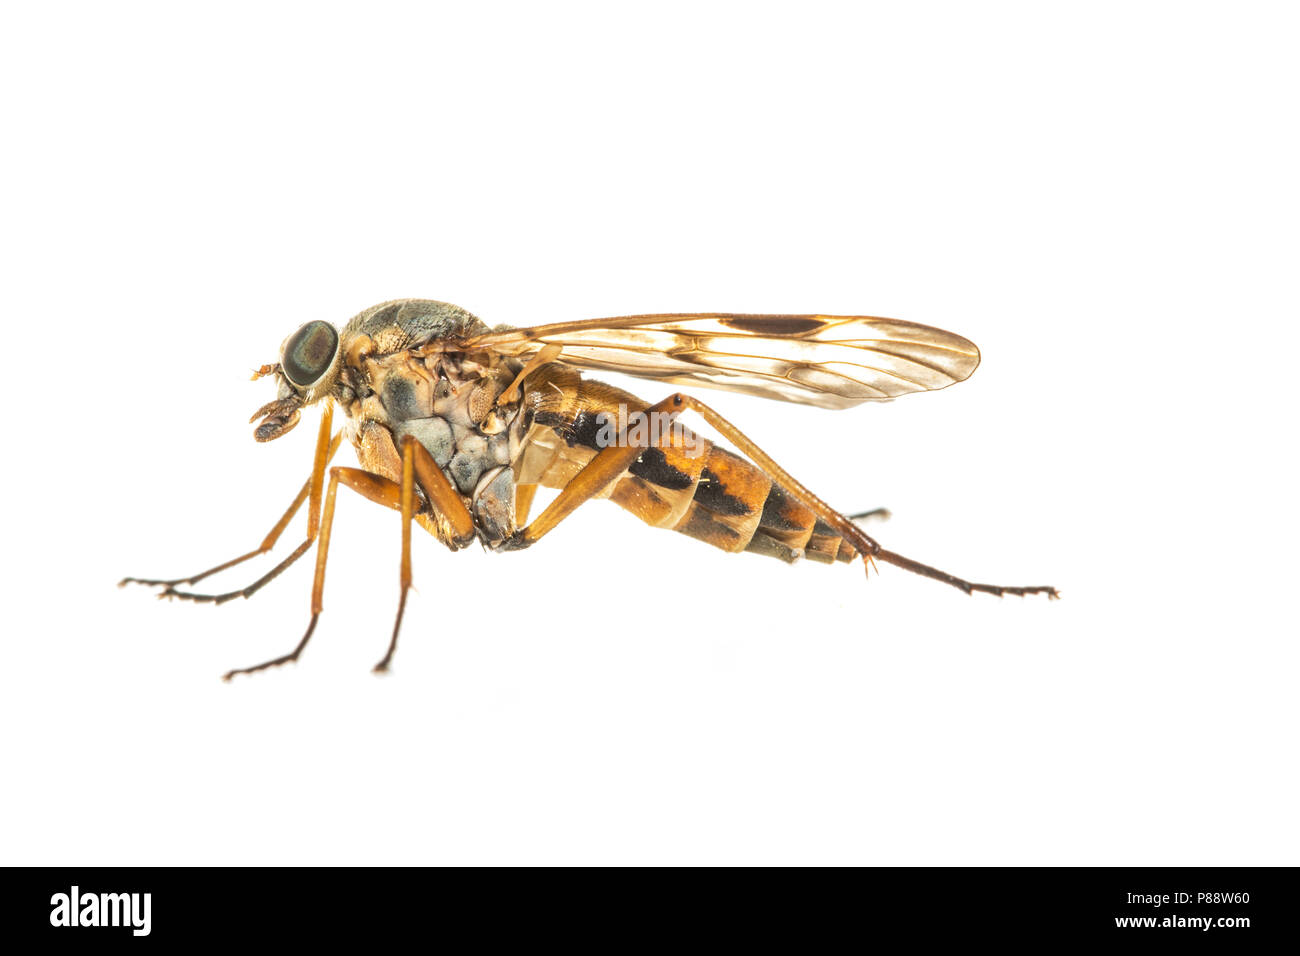 Downlooker snipefly, Gewone Snipvlieg Foto Stock